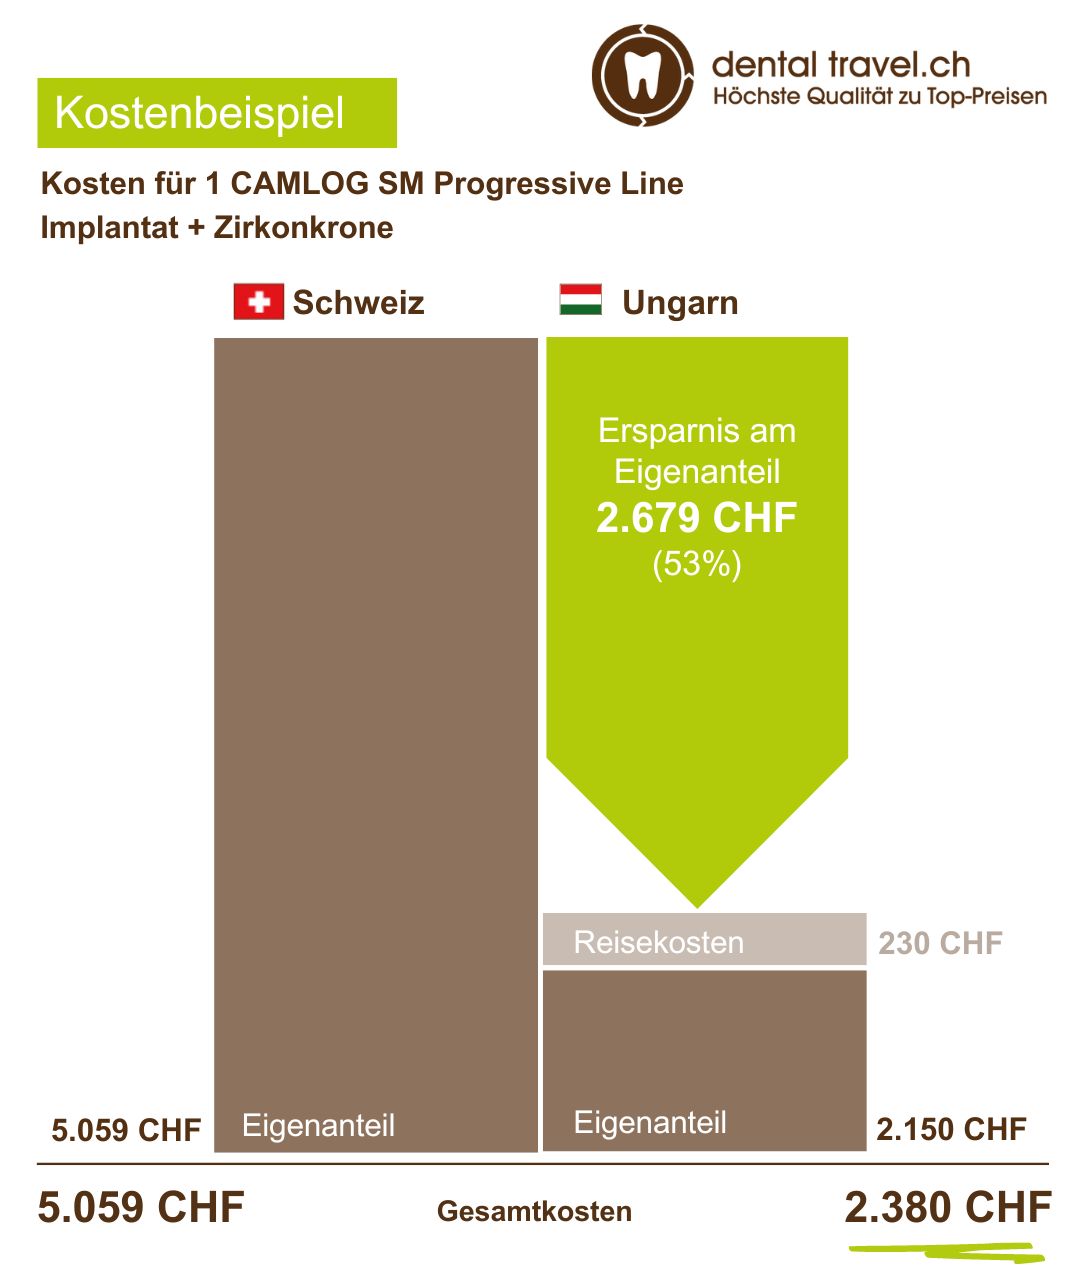 Preisvergleich für 1 CAMLOG SM Progressive Line Implantat und Zirkonkrone, Schaubild der Kosten in Ungarn und der Schweiz